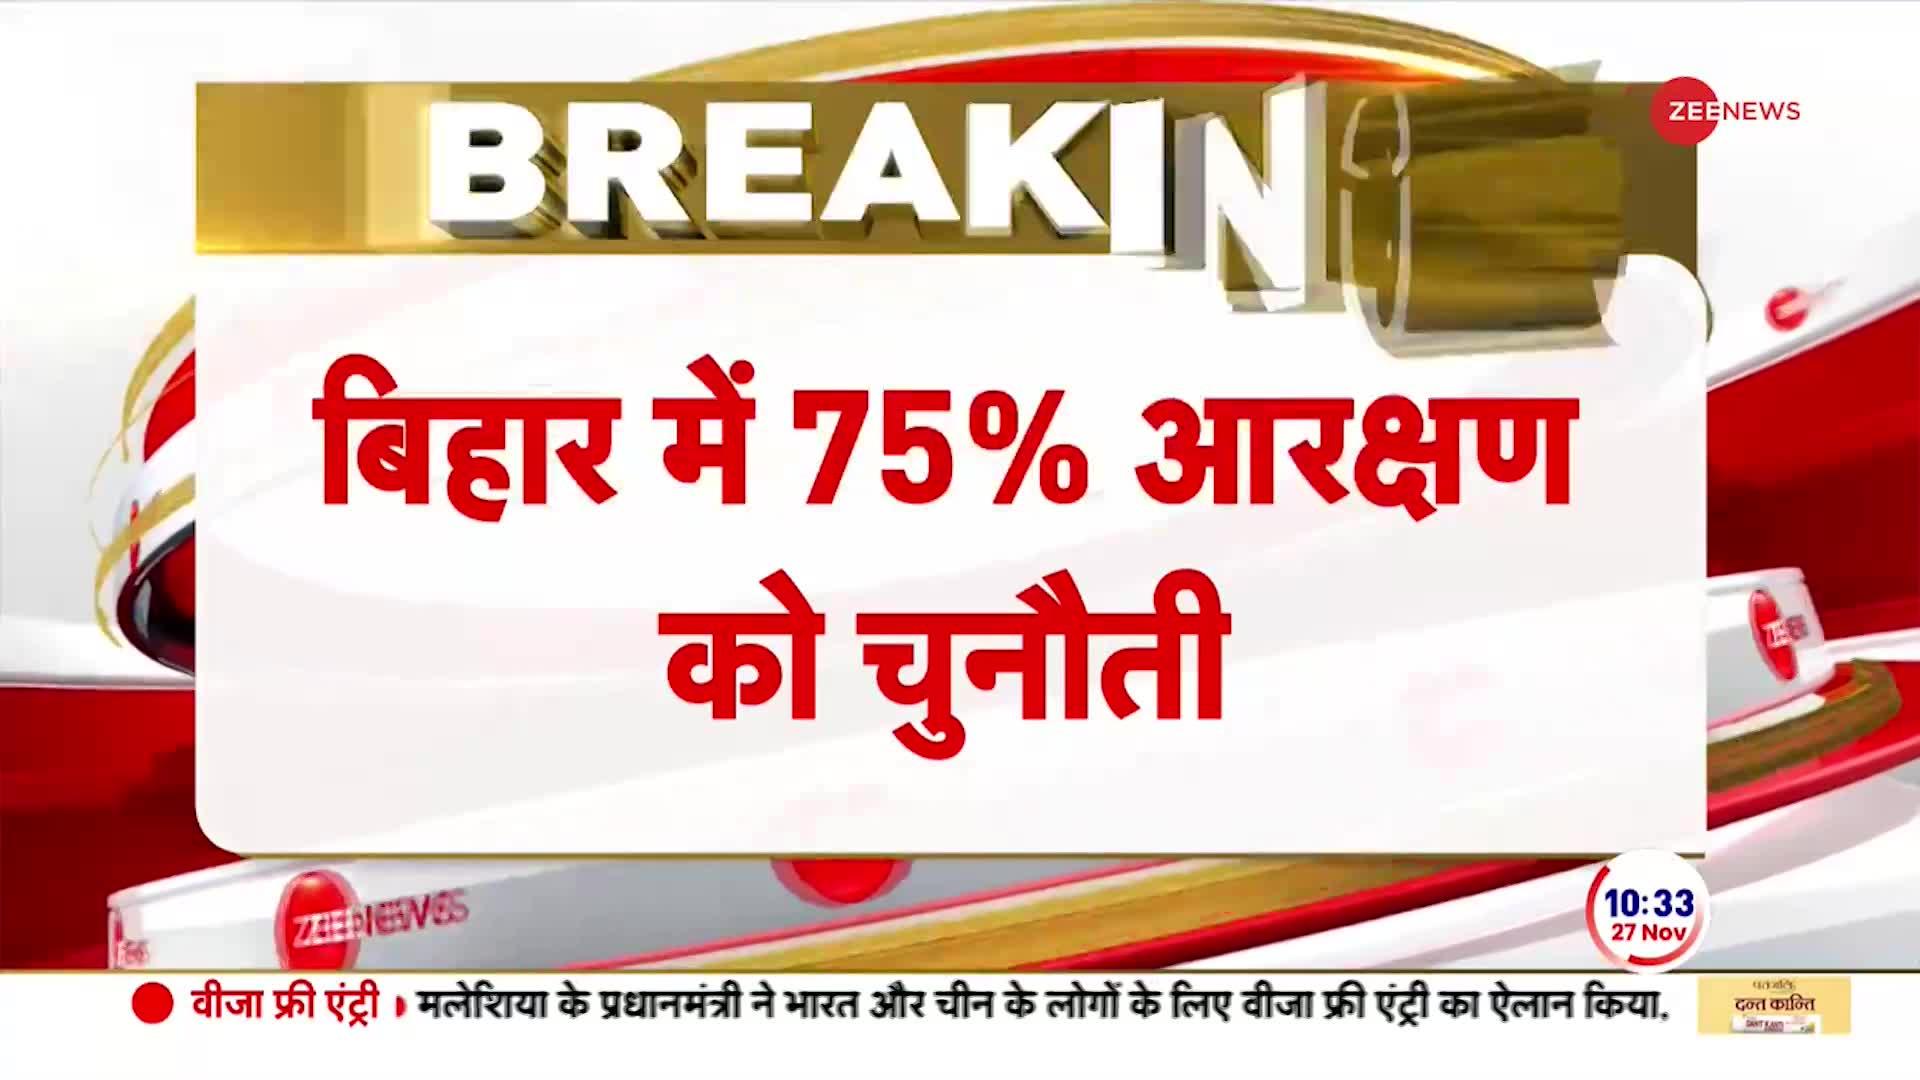 Bihar Breaking: बिहार में 75% आरक्षण की राह मुश्किल है !